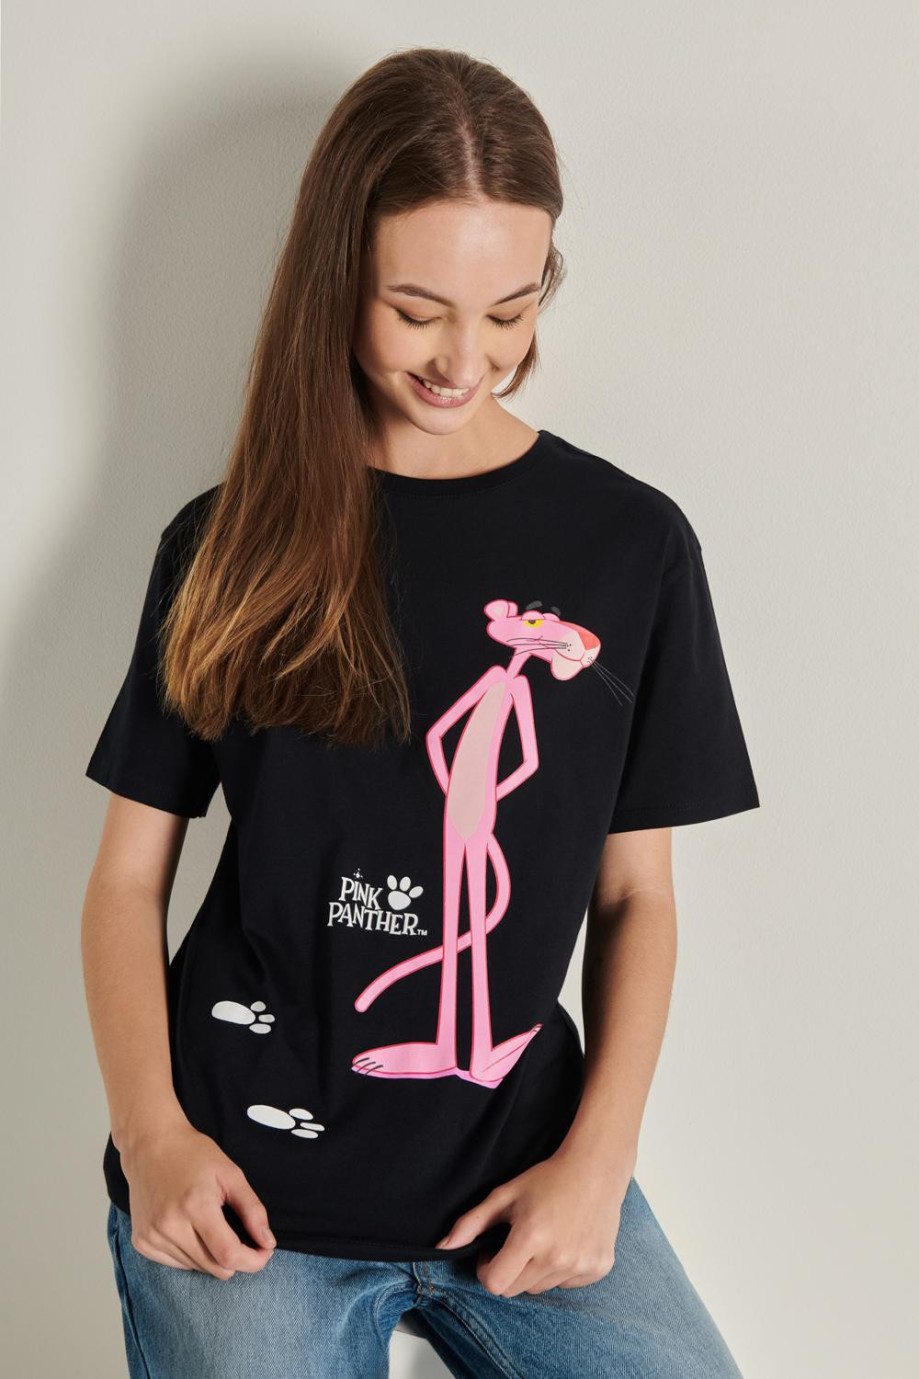 Camiseta femenina hombro rodado manga corta con estampado en frente de La pantera rosa